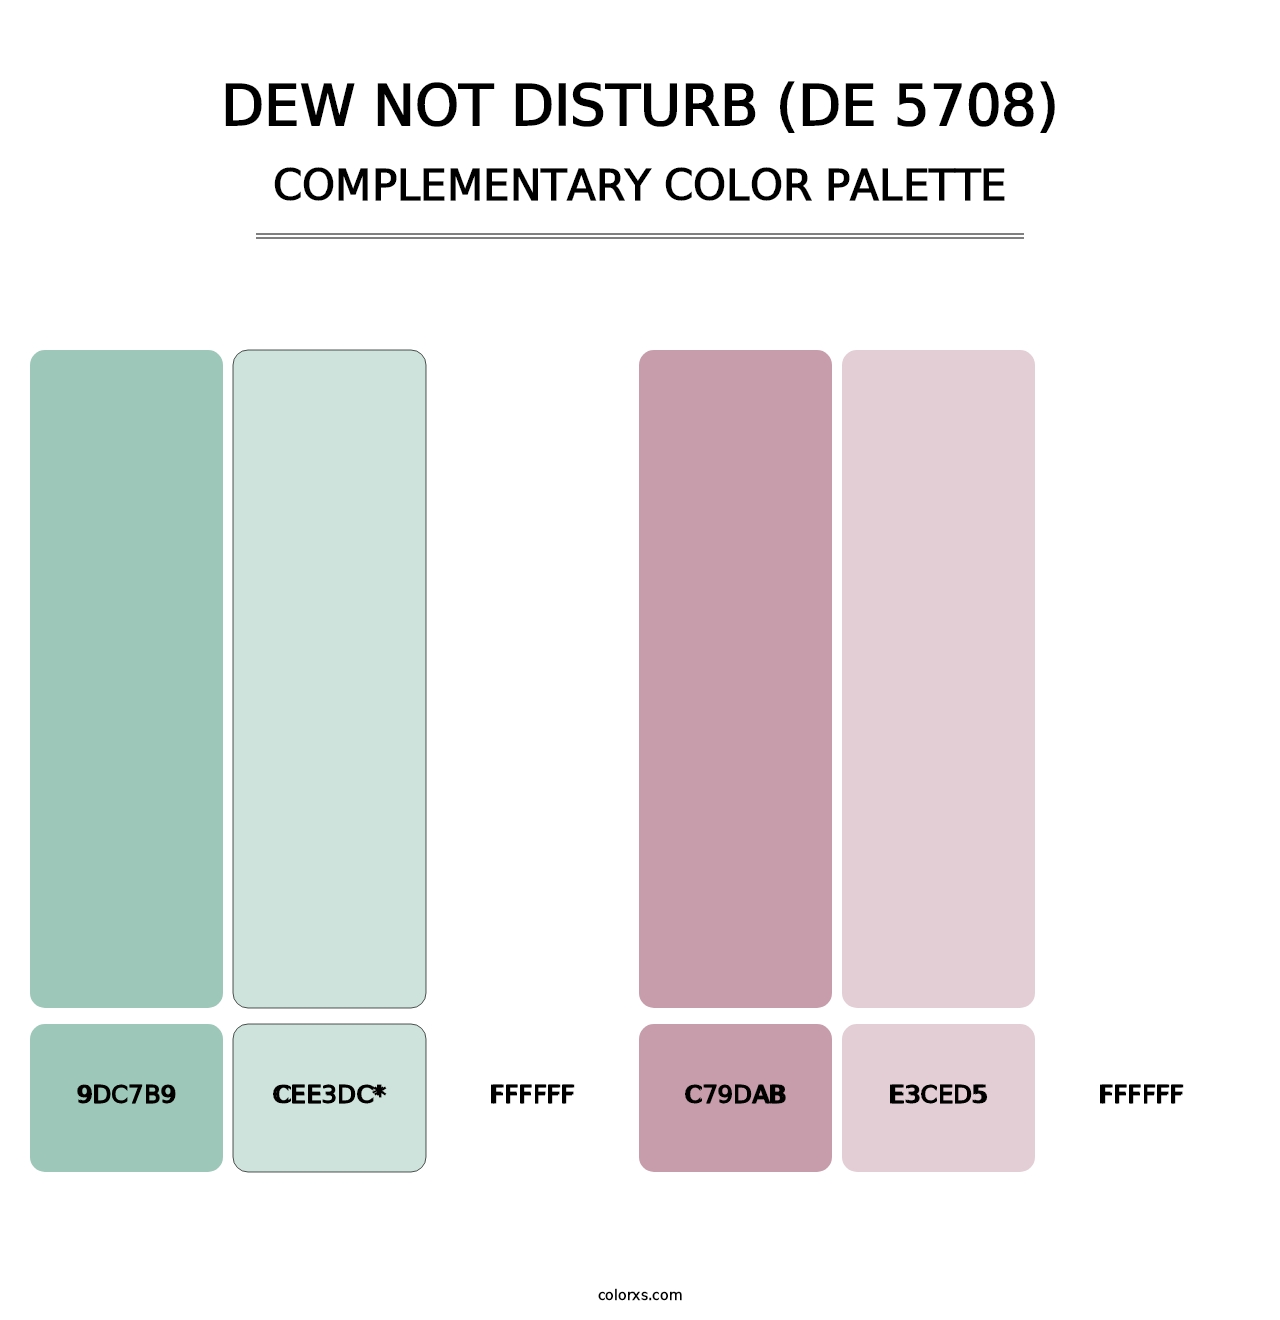 Dew Not Disturb (DE 5708) - Complementary Color Palette